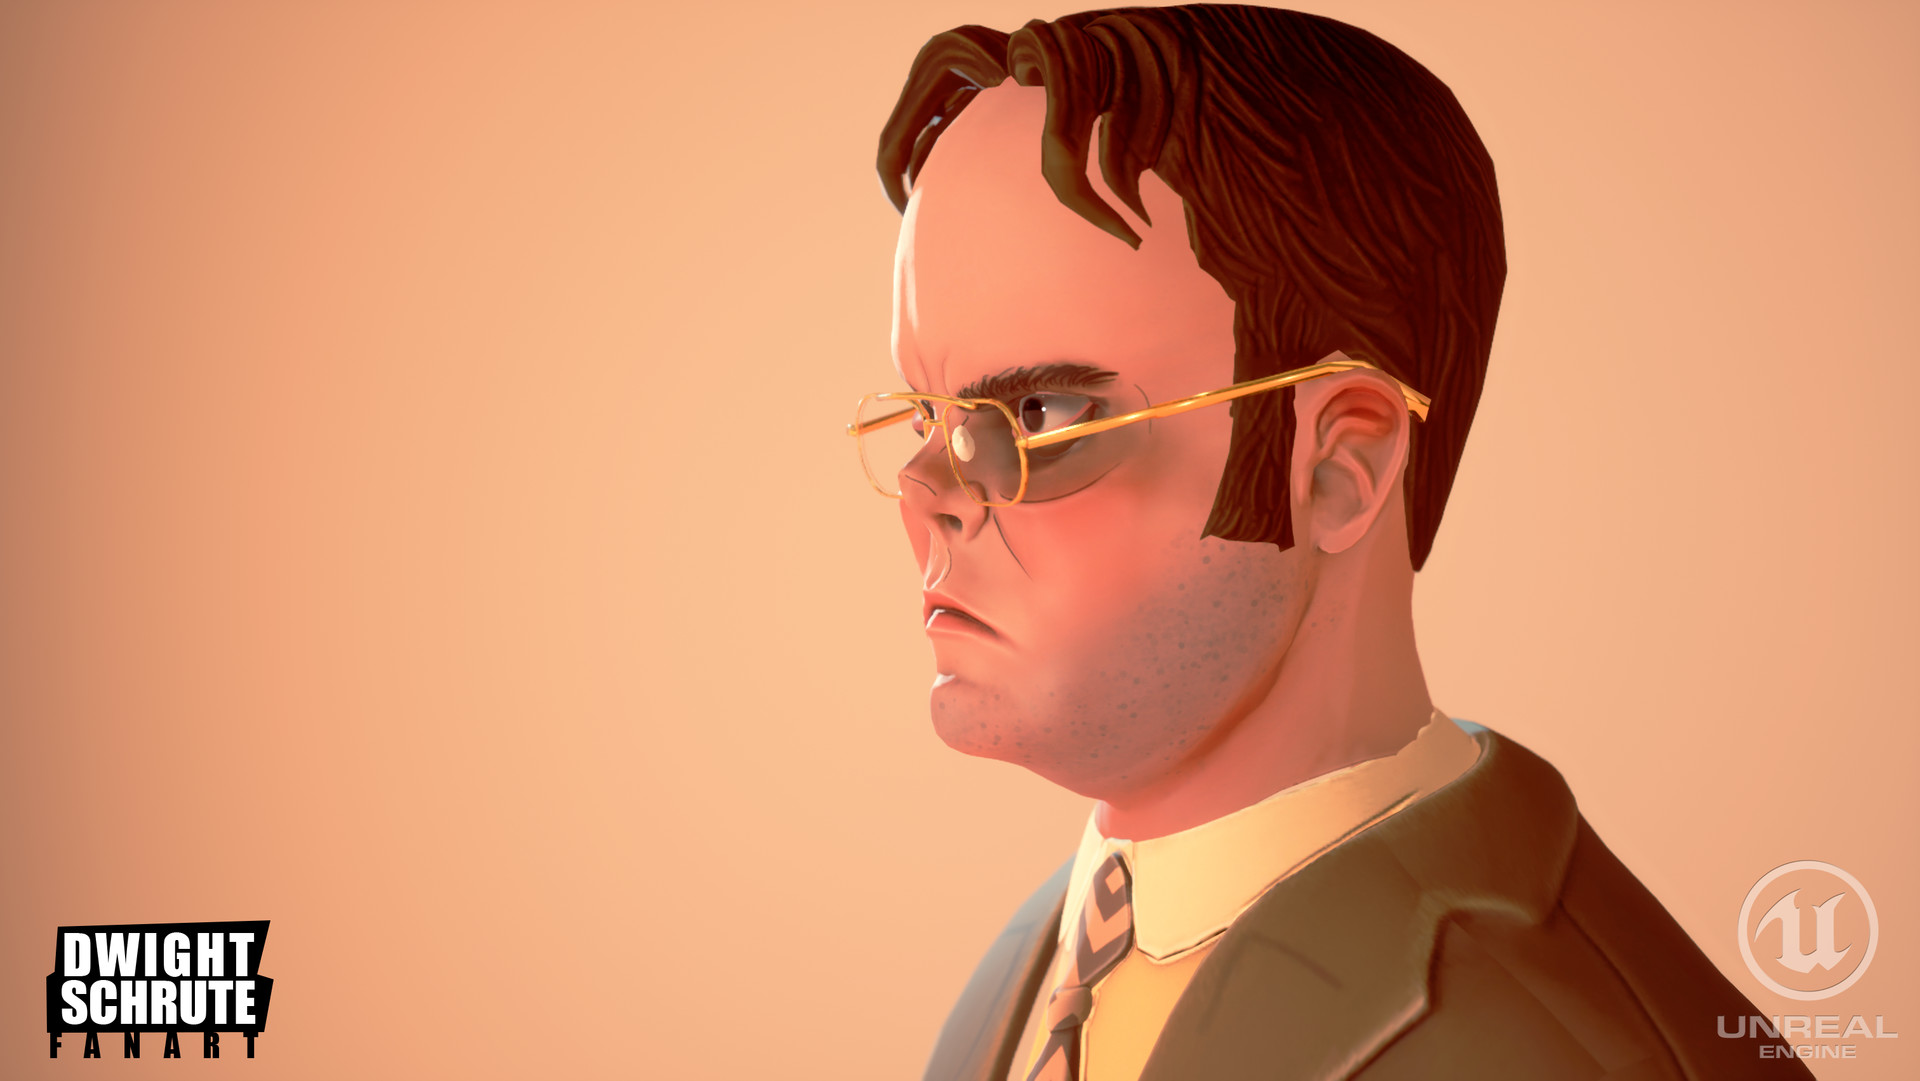 The Office - Dwight Schrute Fan Art.